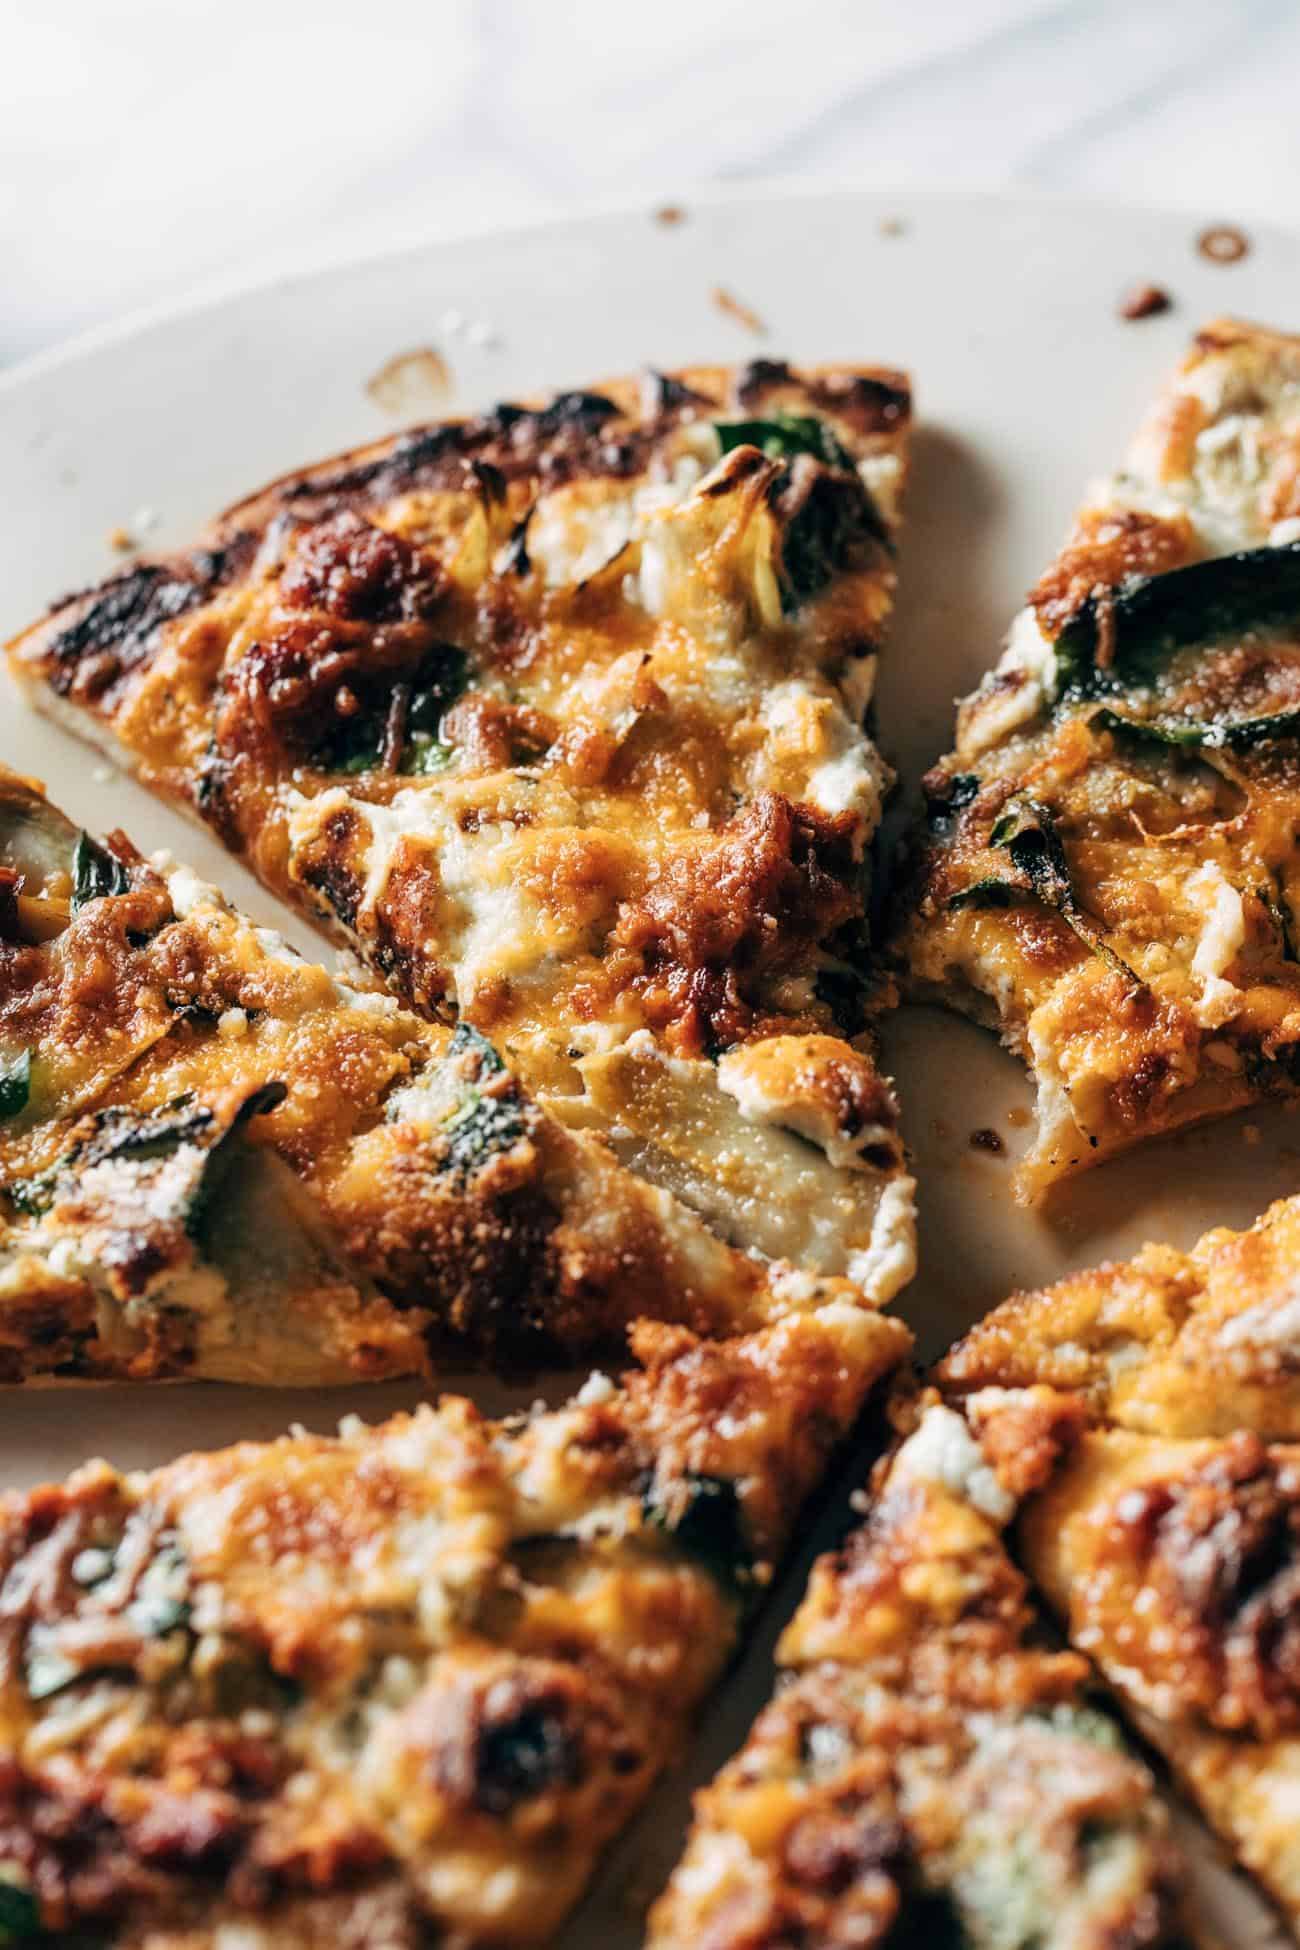 Spinach and artichoke pizza slices